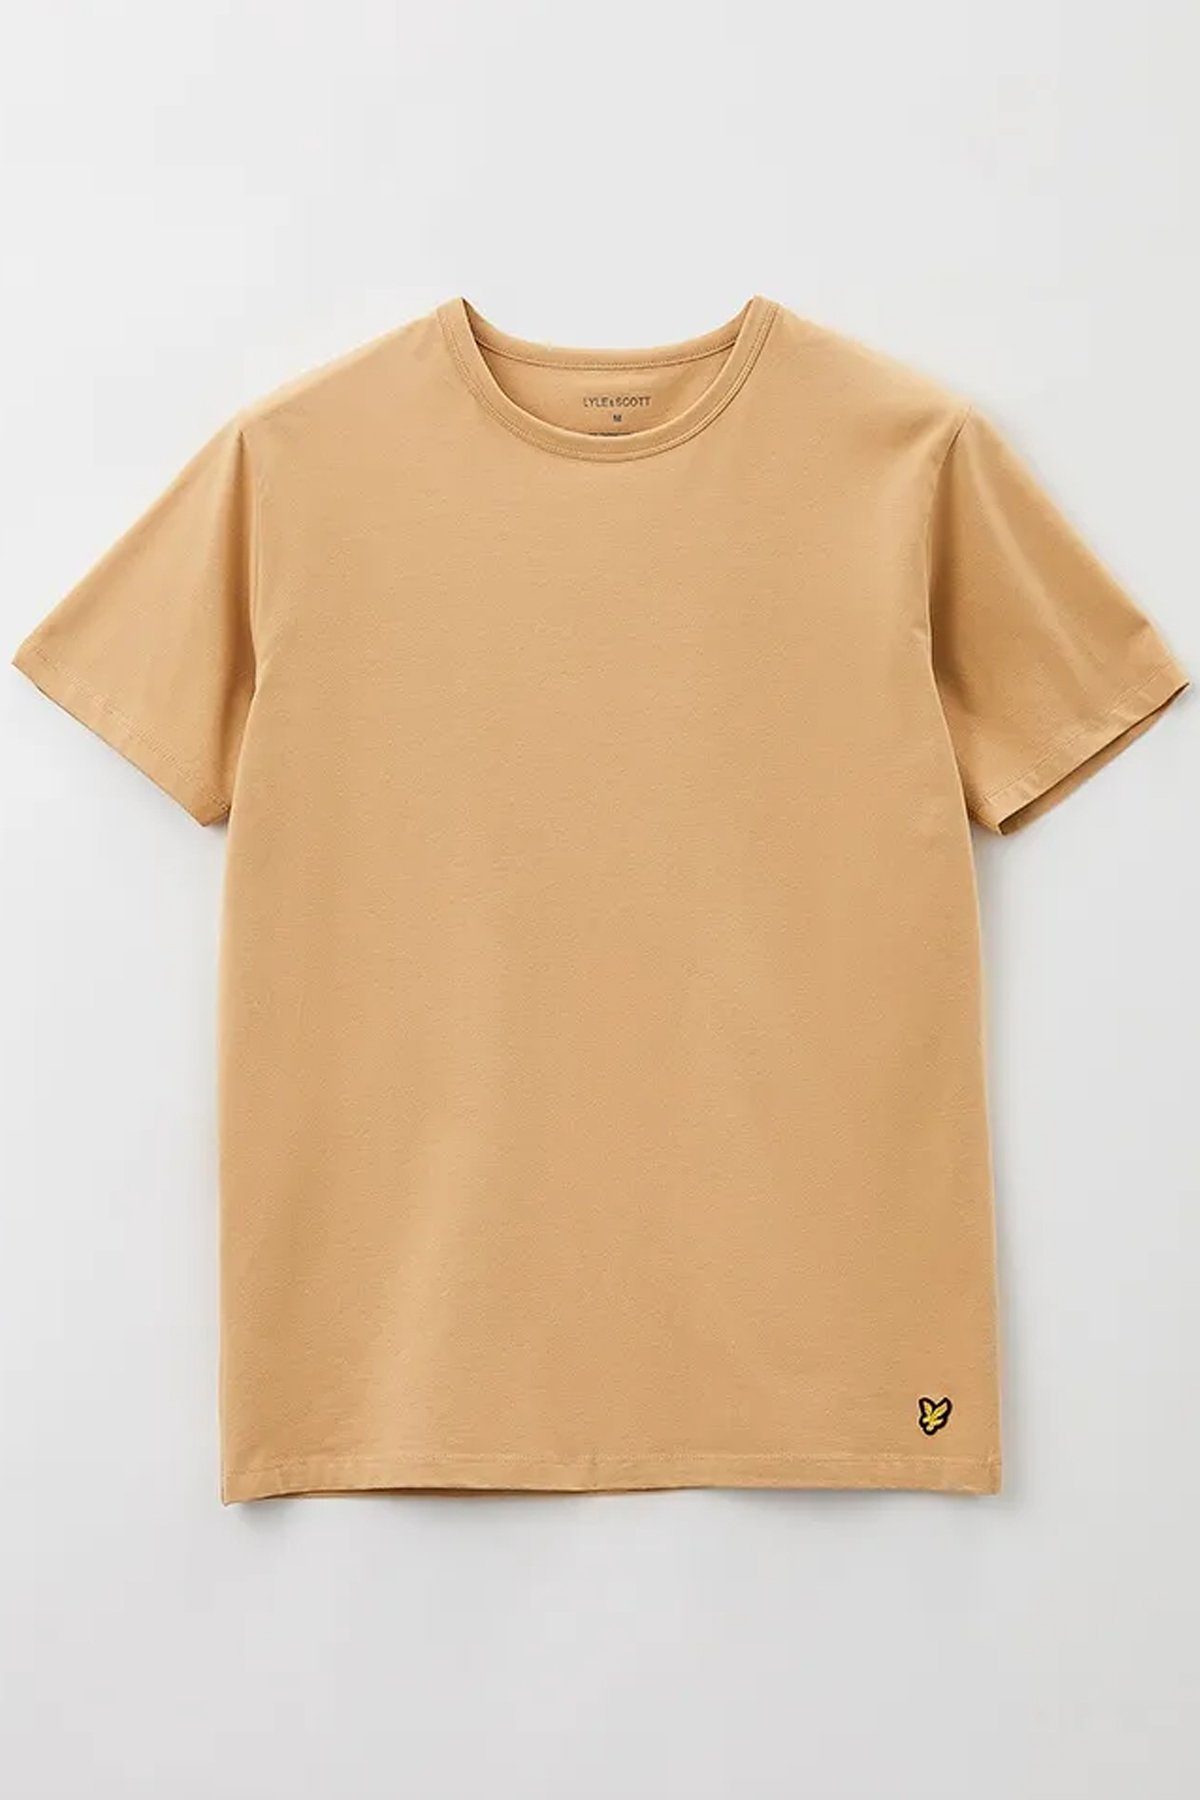 Lyle & Scott (3Er-Set) Basic Farben Streifen/ T-Shirt Tiefschwarz Khaki Teint